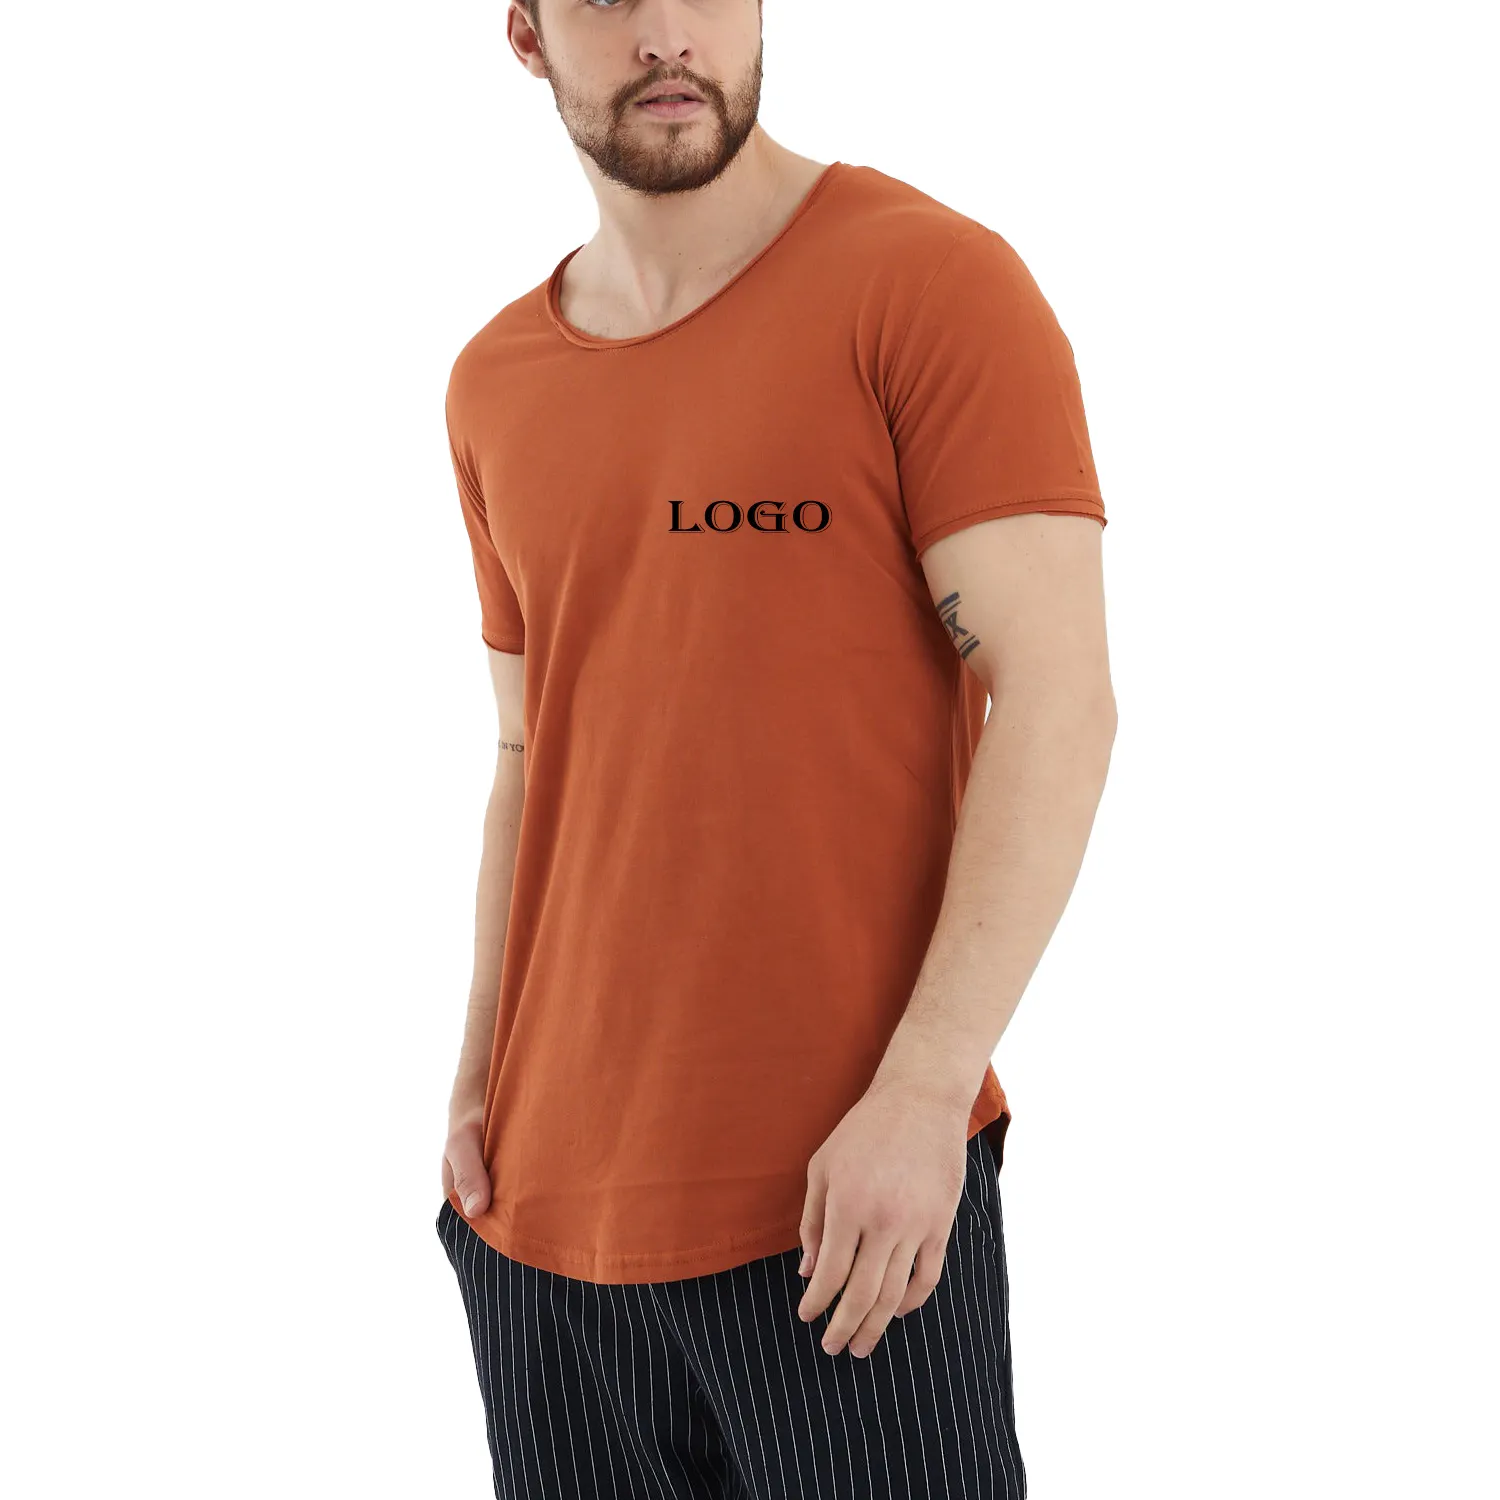 Personalizar hombres ropa 100% algodón marca camisetas precio barato pedido al por mayor muestras apoyo gran oferta